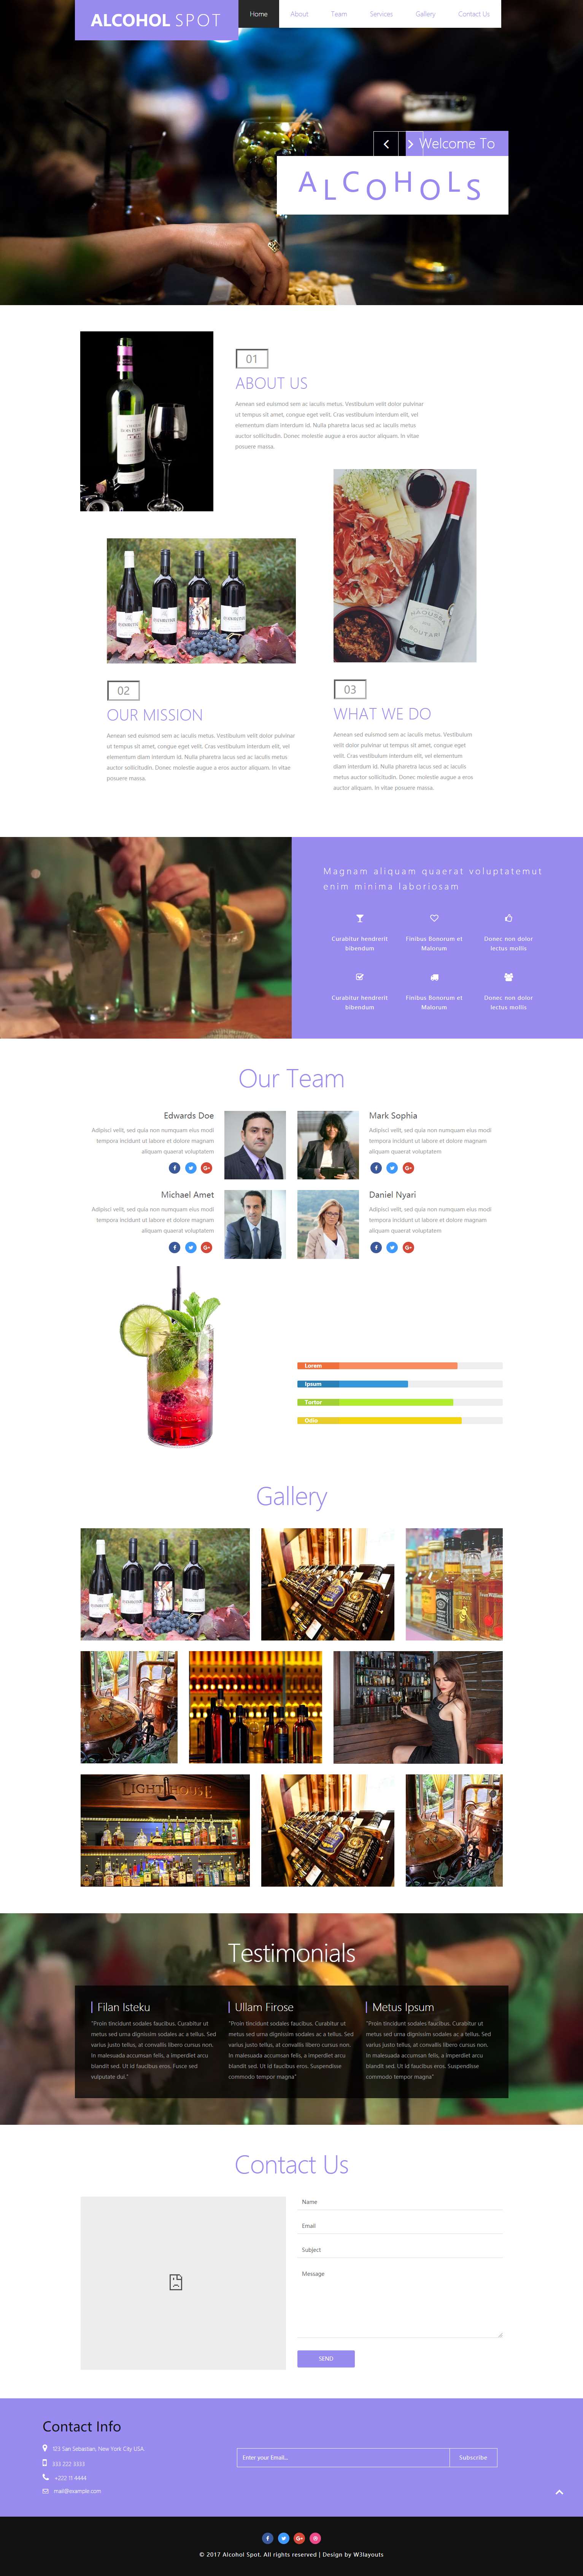 紫色简洁风格的高级酒庄整站网站源码下载